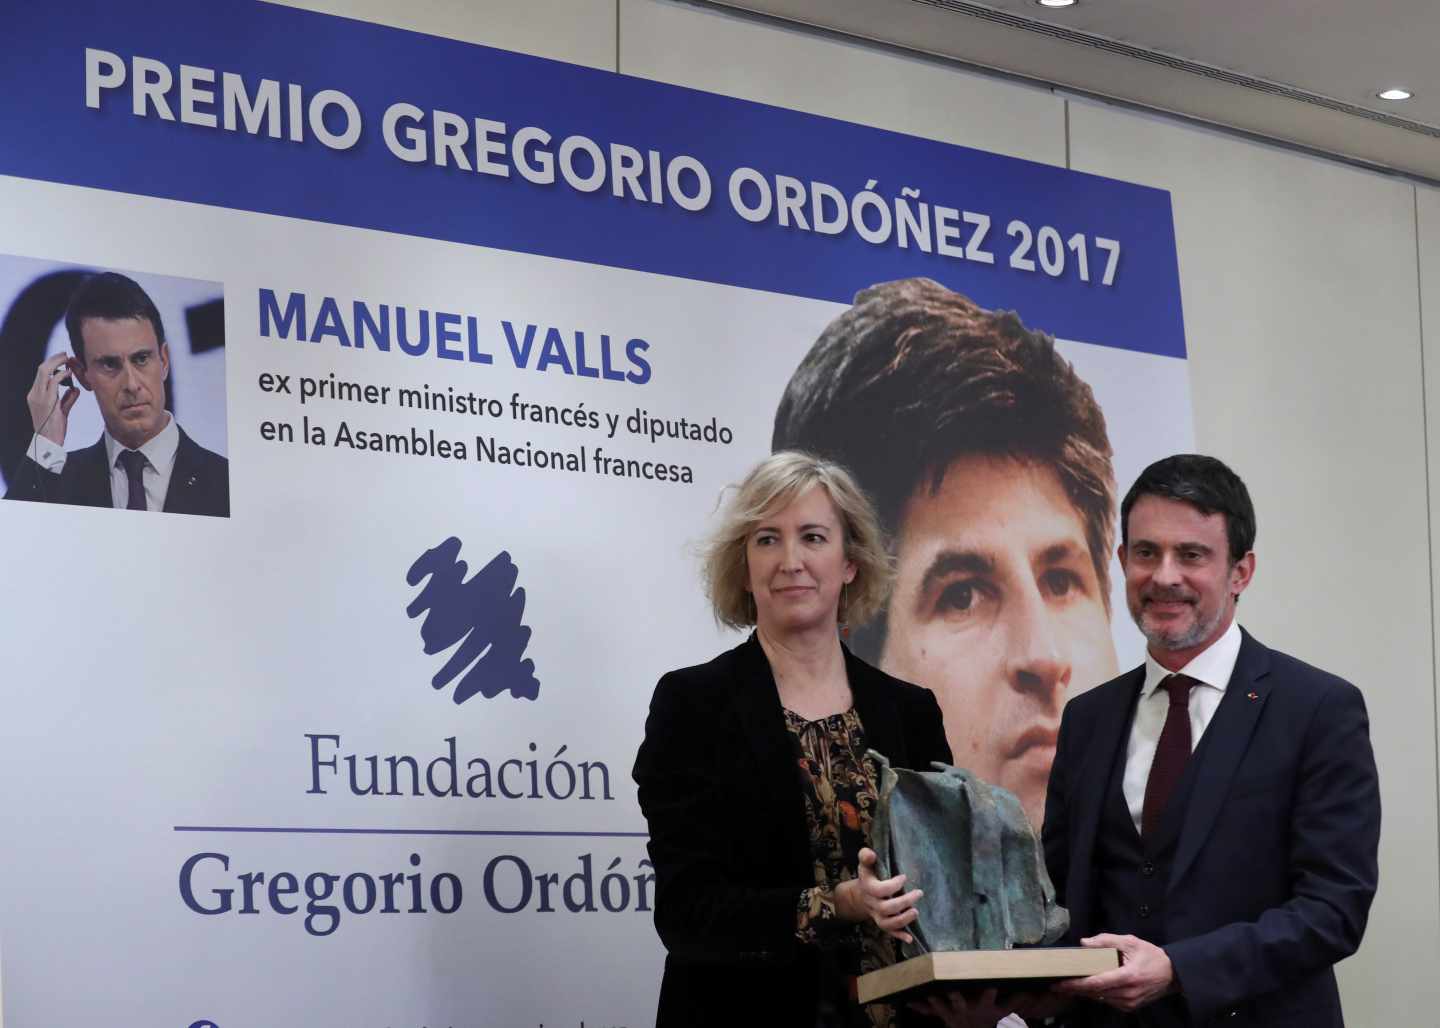 El ex primer ministro francés Manuel Valls recibe el Premio Gregorio Ordóñez.